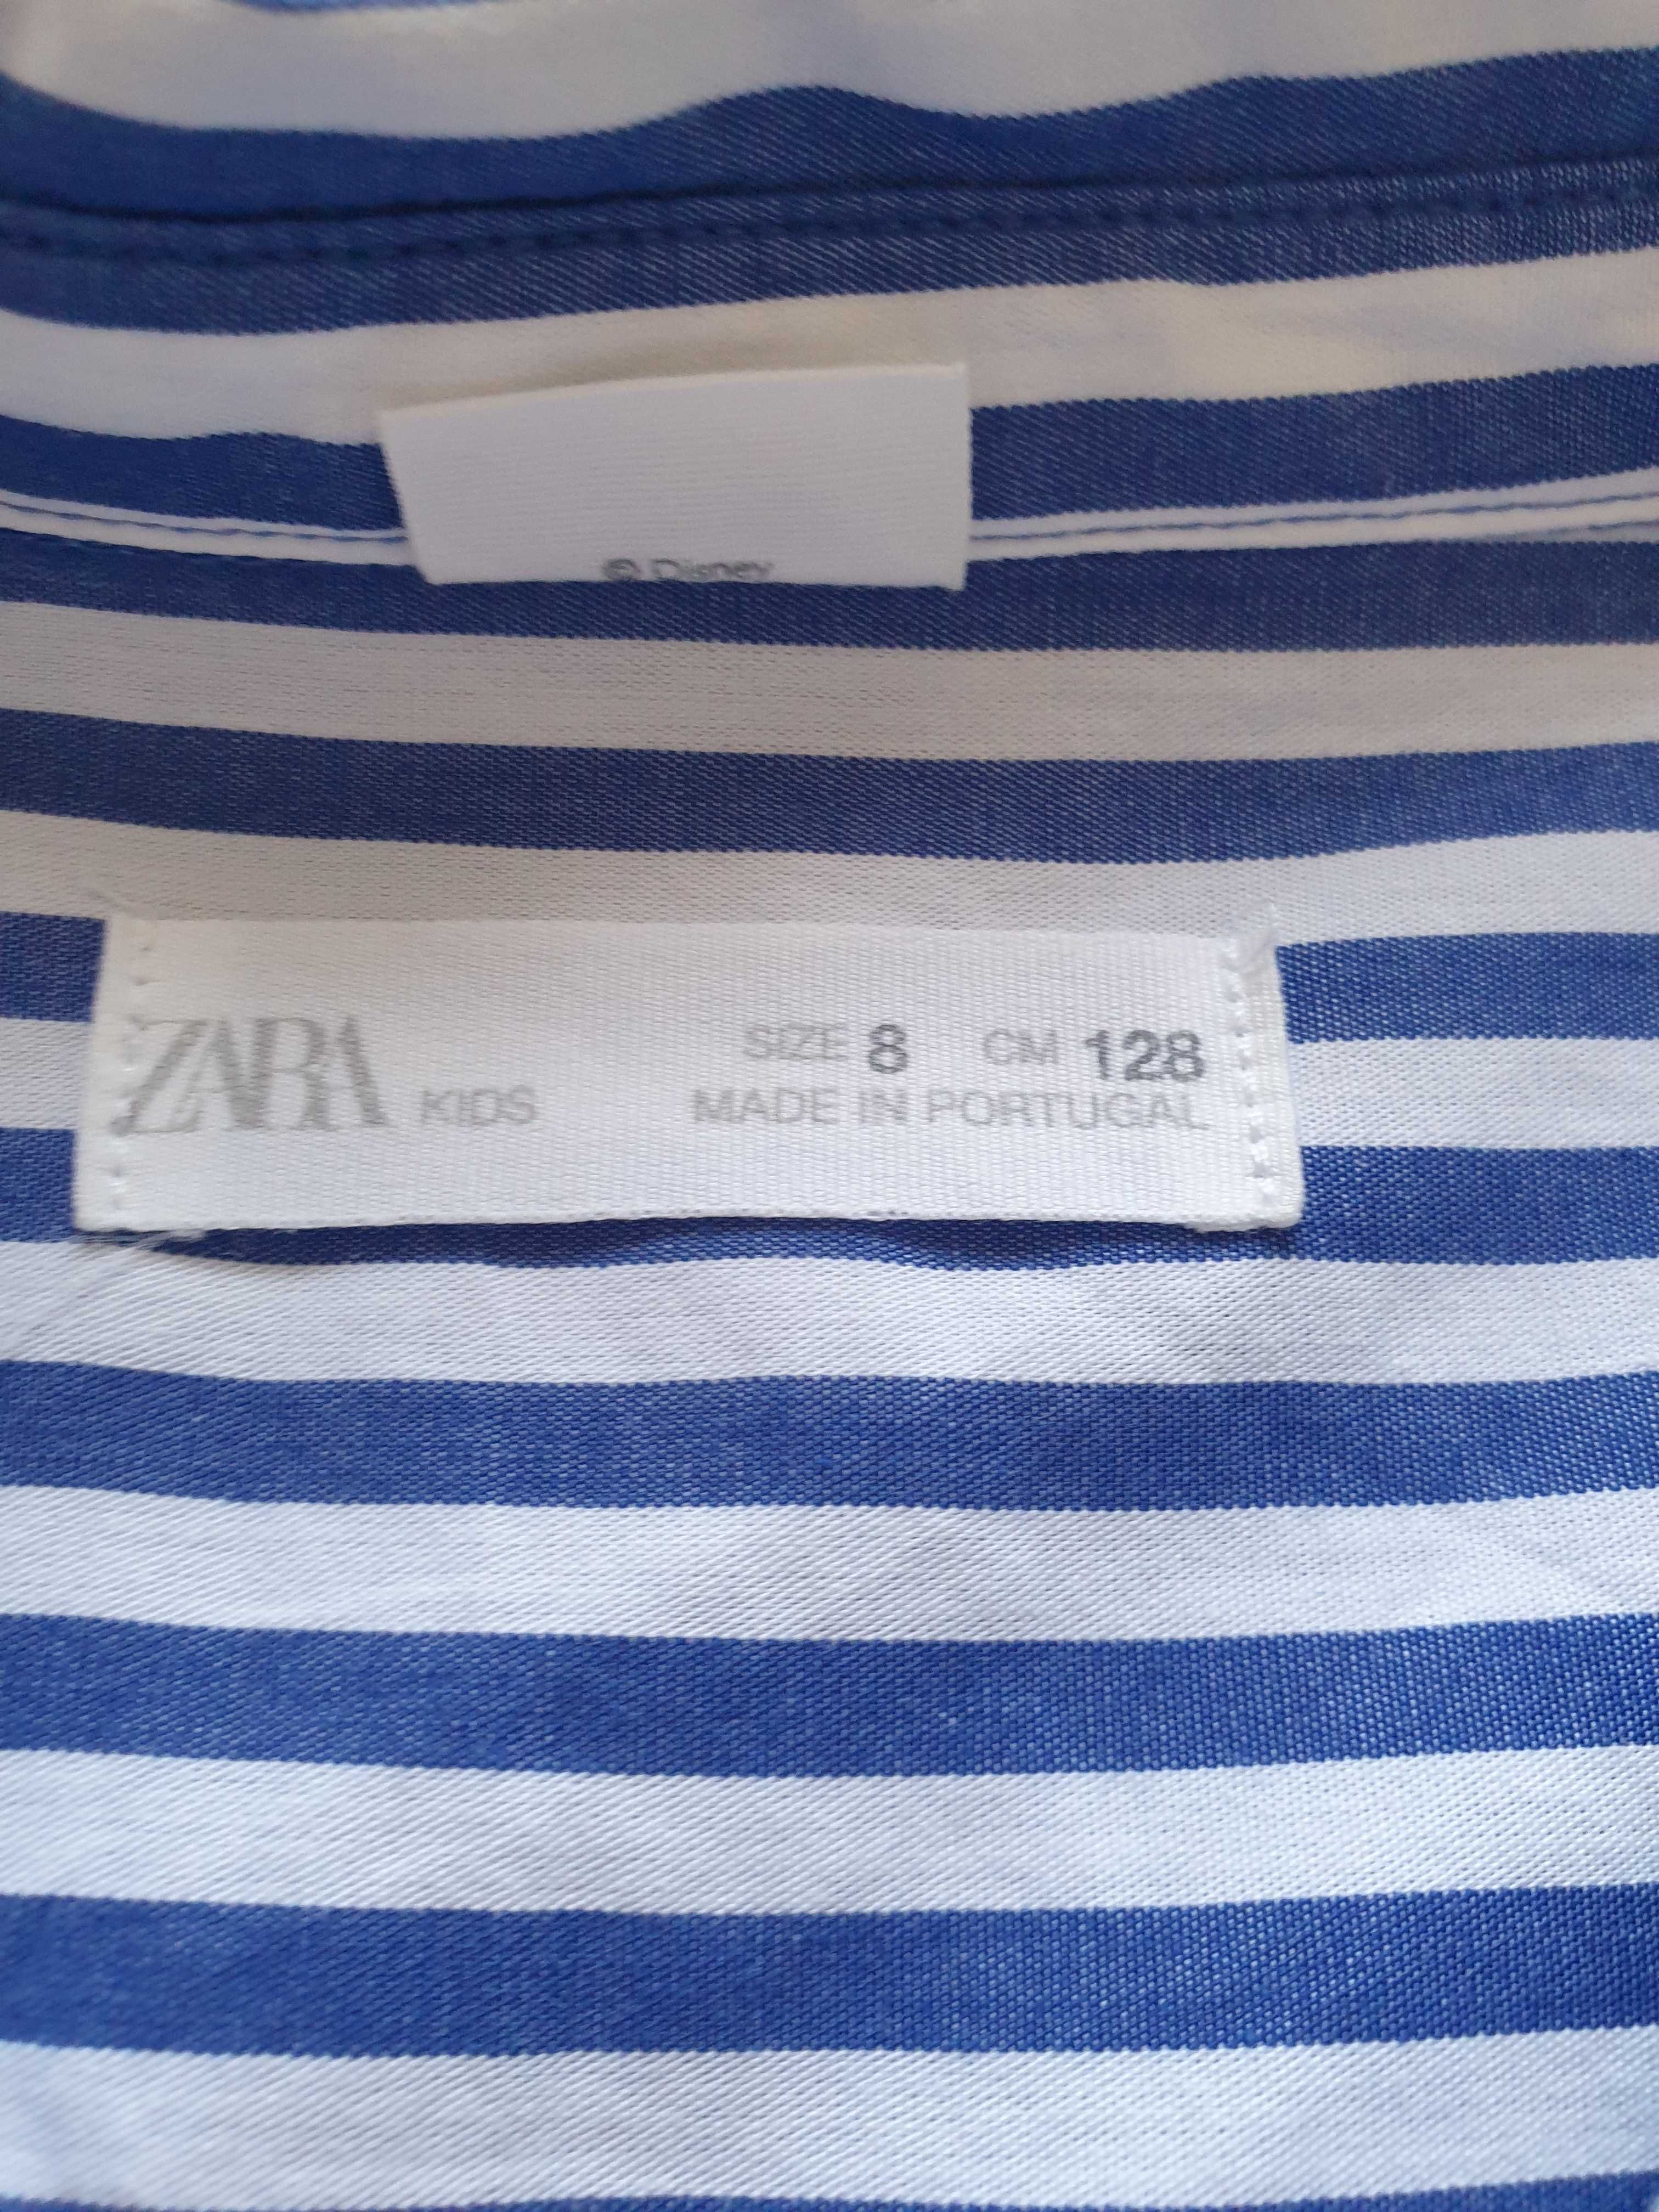 Camisa 8 anos Marca Zara usada poucas vezes